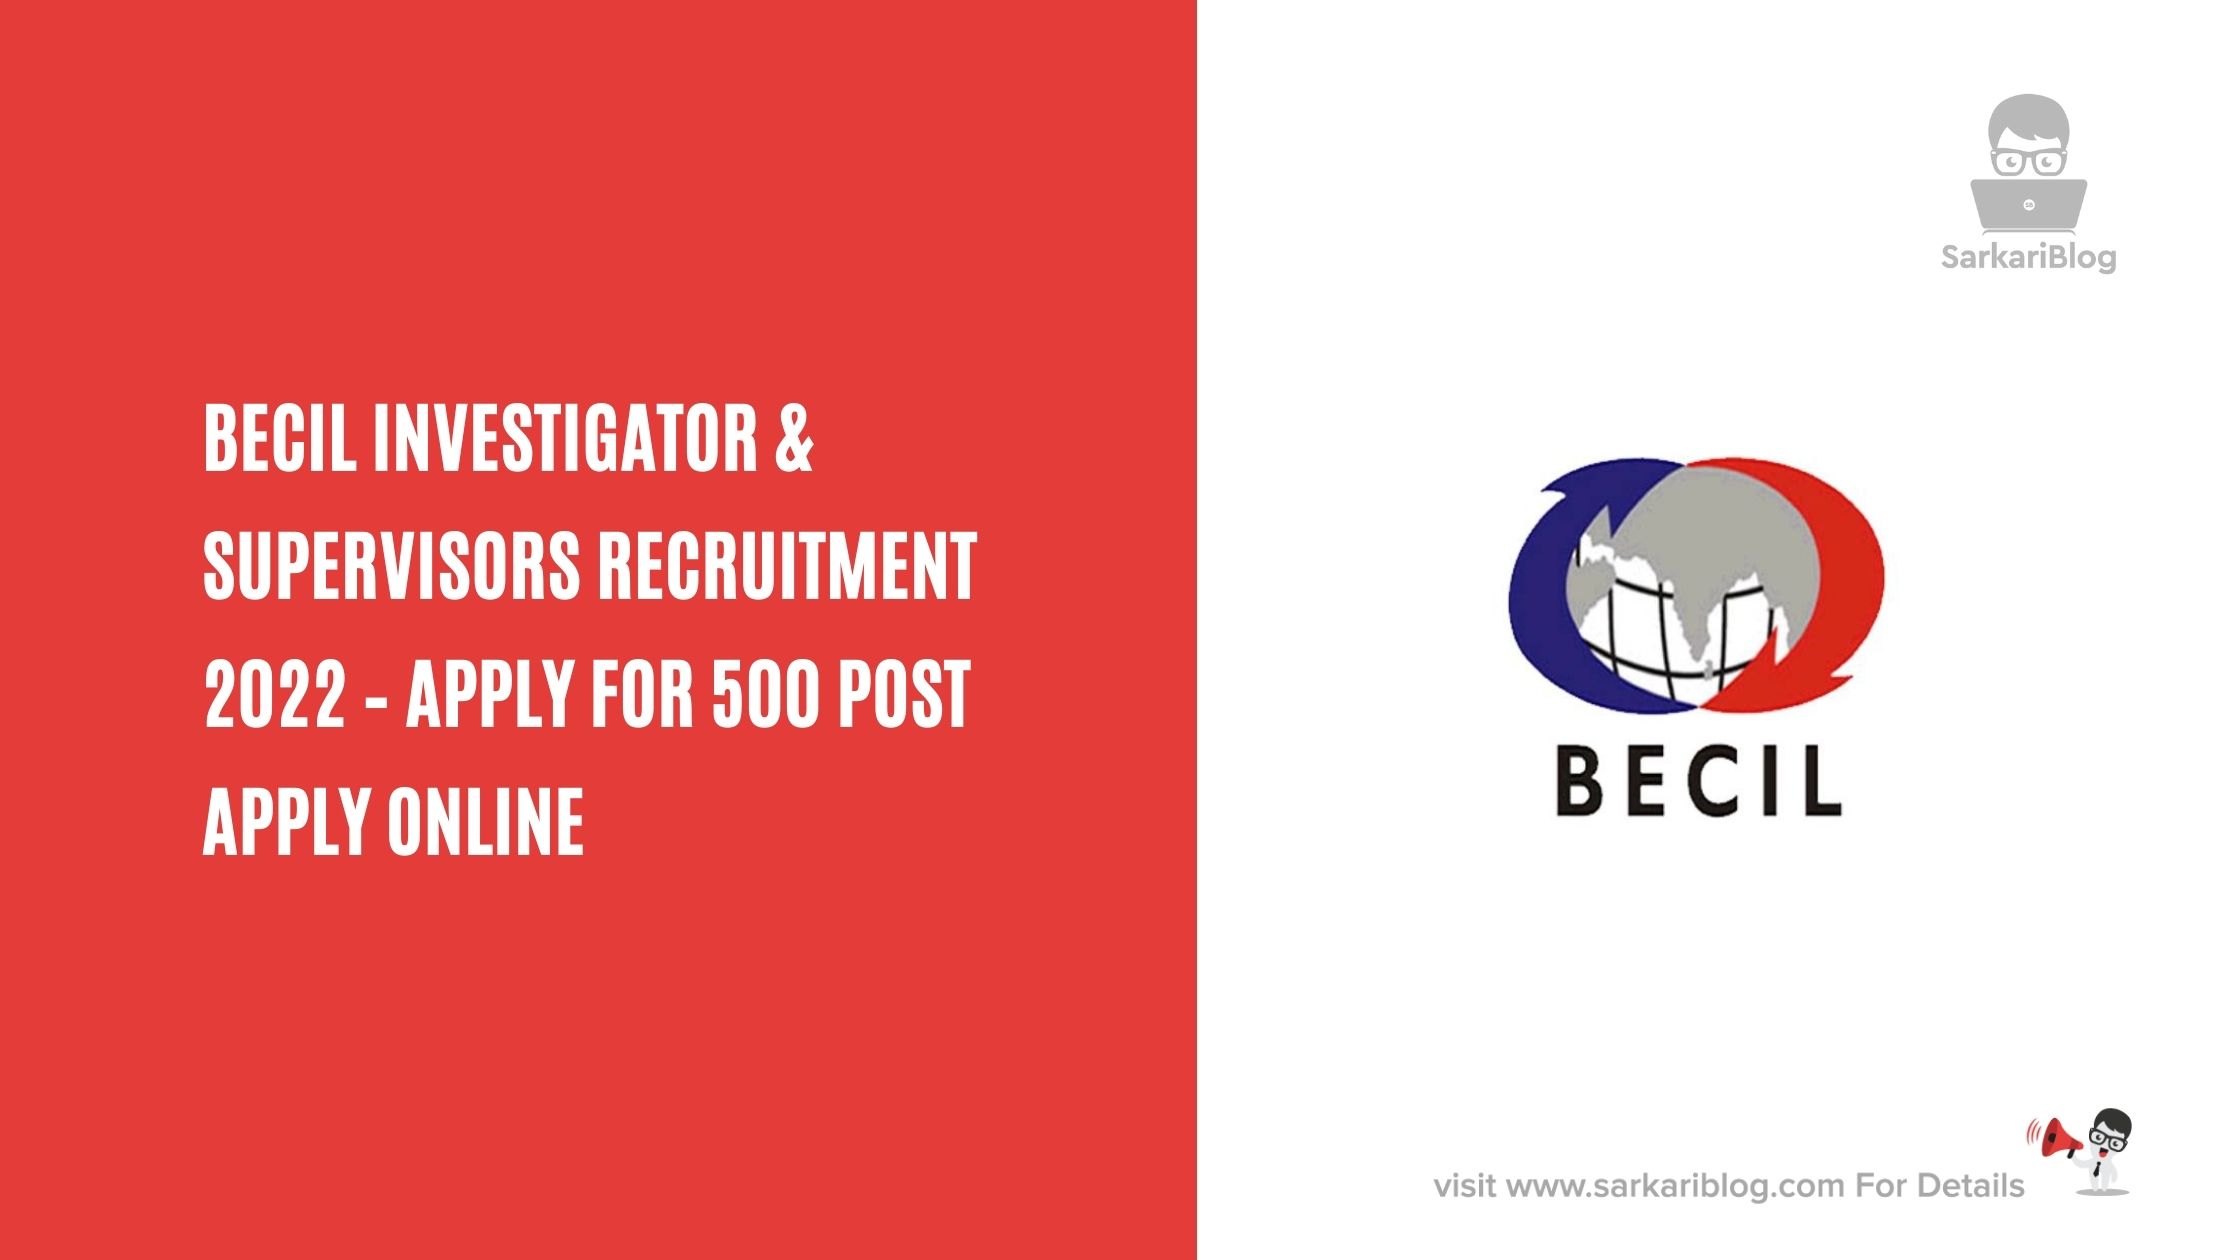 BECIL Investigator & Supervisors Recruitment 2022